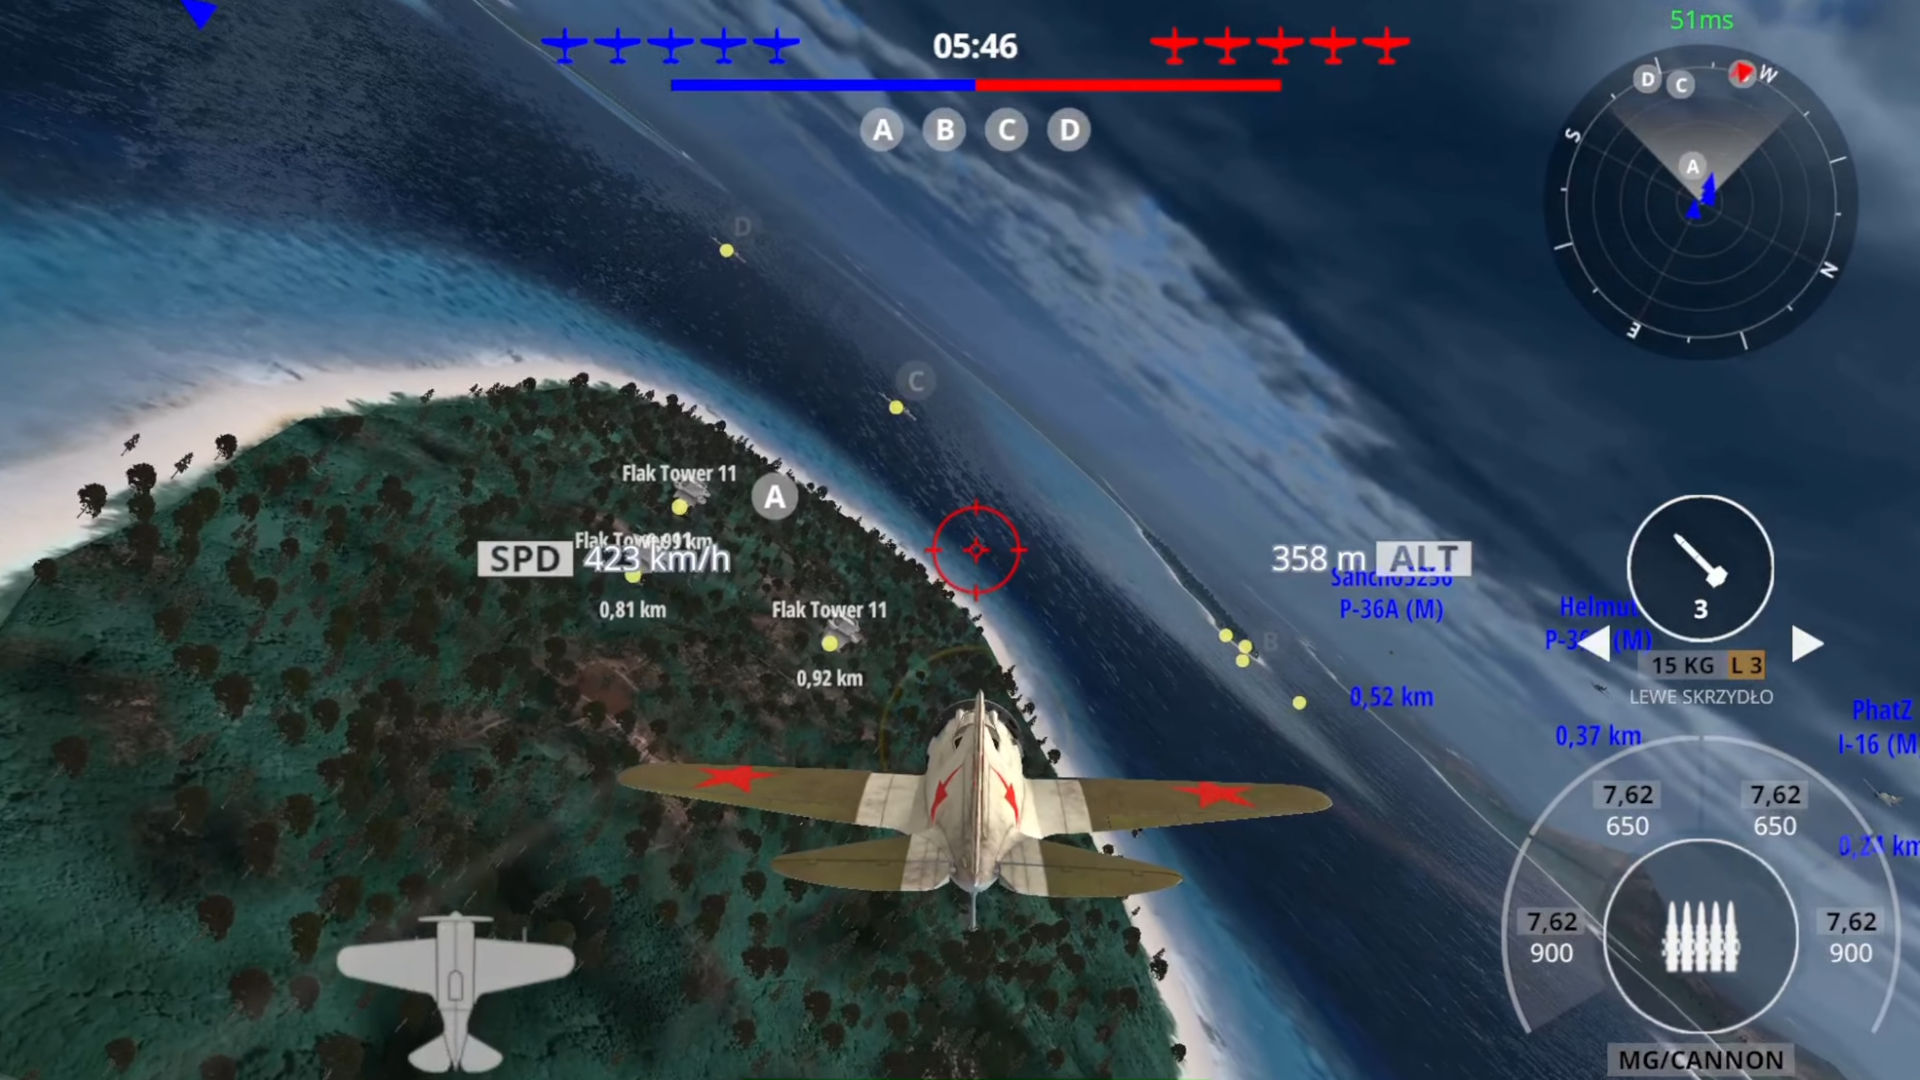 Horizon Midnight Sky Combat Aircraft - War Arena Flight Simulator 2022 -  Metacritic